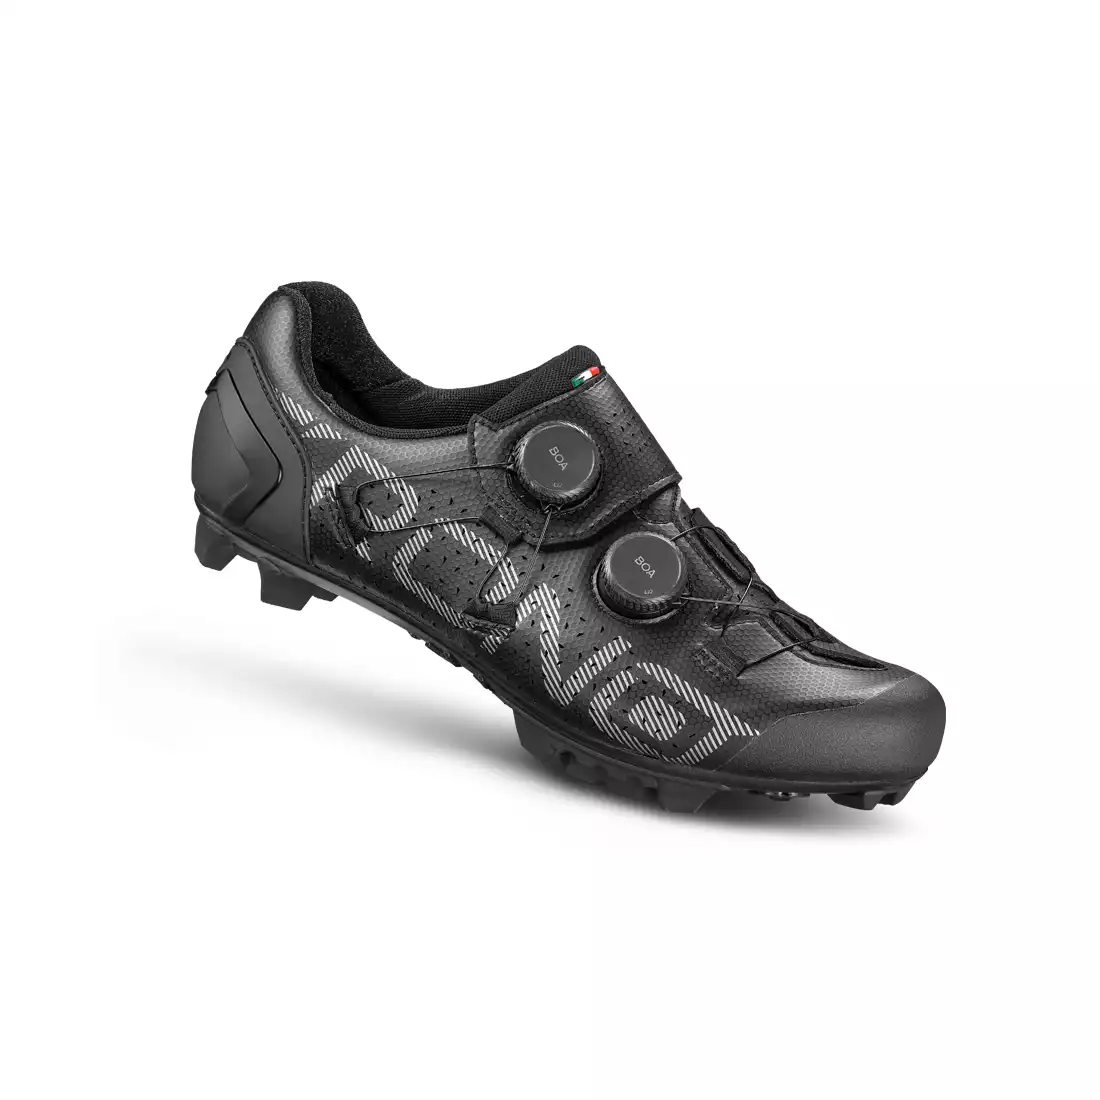 CRONO CX-1 MTB cyklistické boty Černá